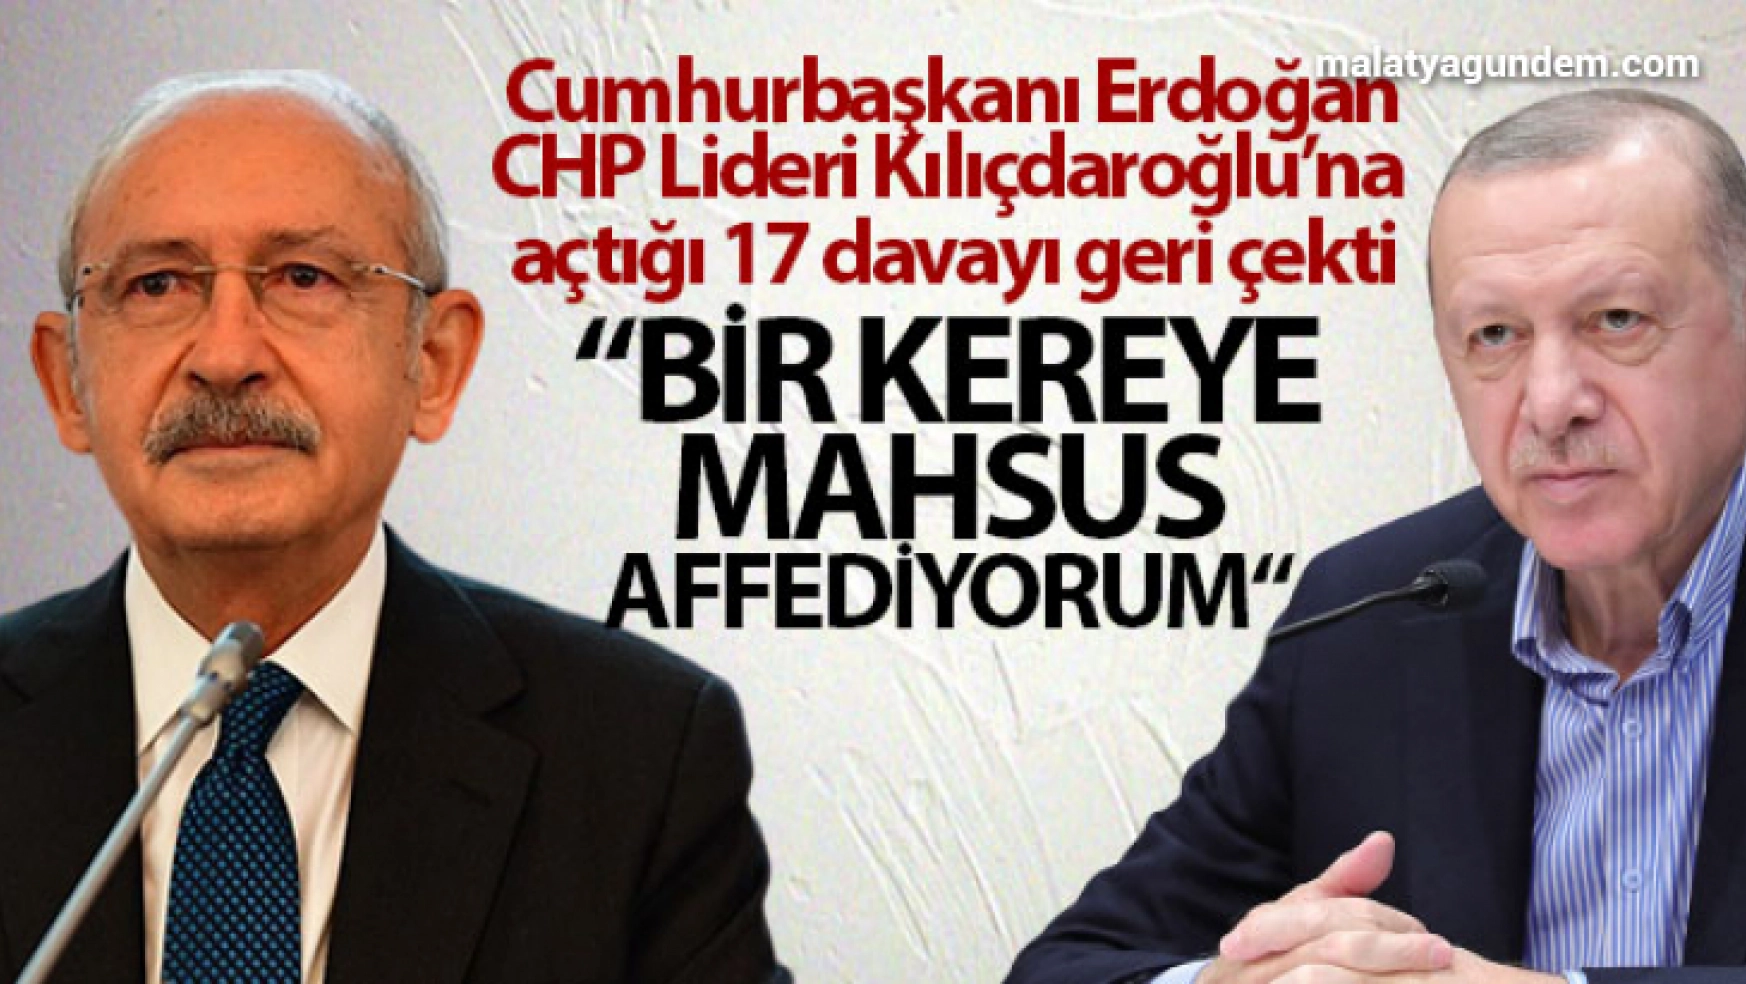 Cumhurbaşkanı Erdoğan, CHP Lideri Kılıçdaroğlu'na açtığı 17 davayı geri çekti